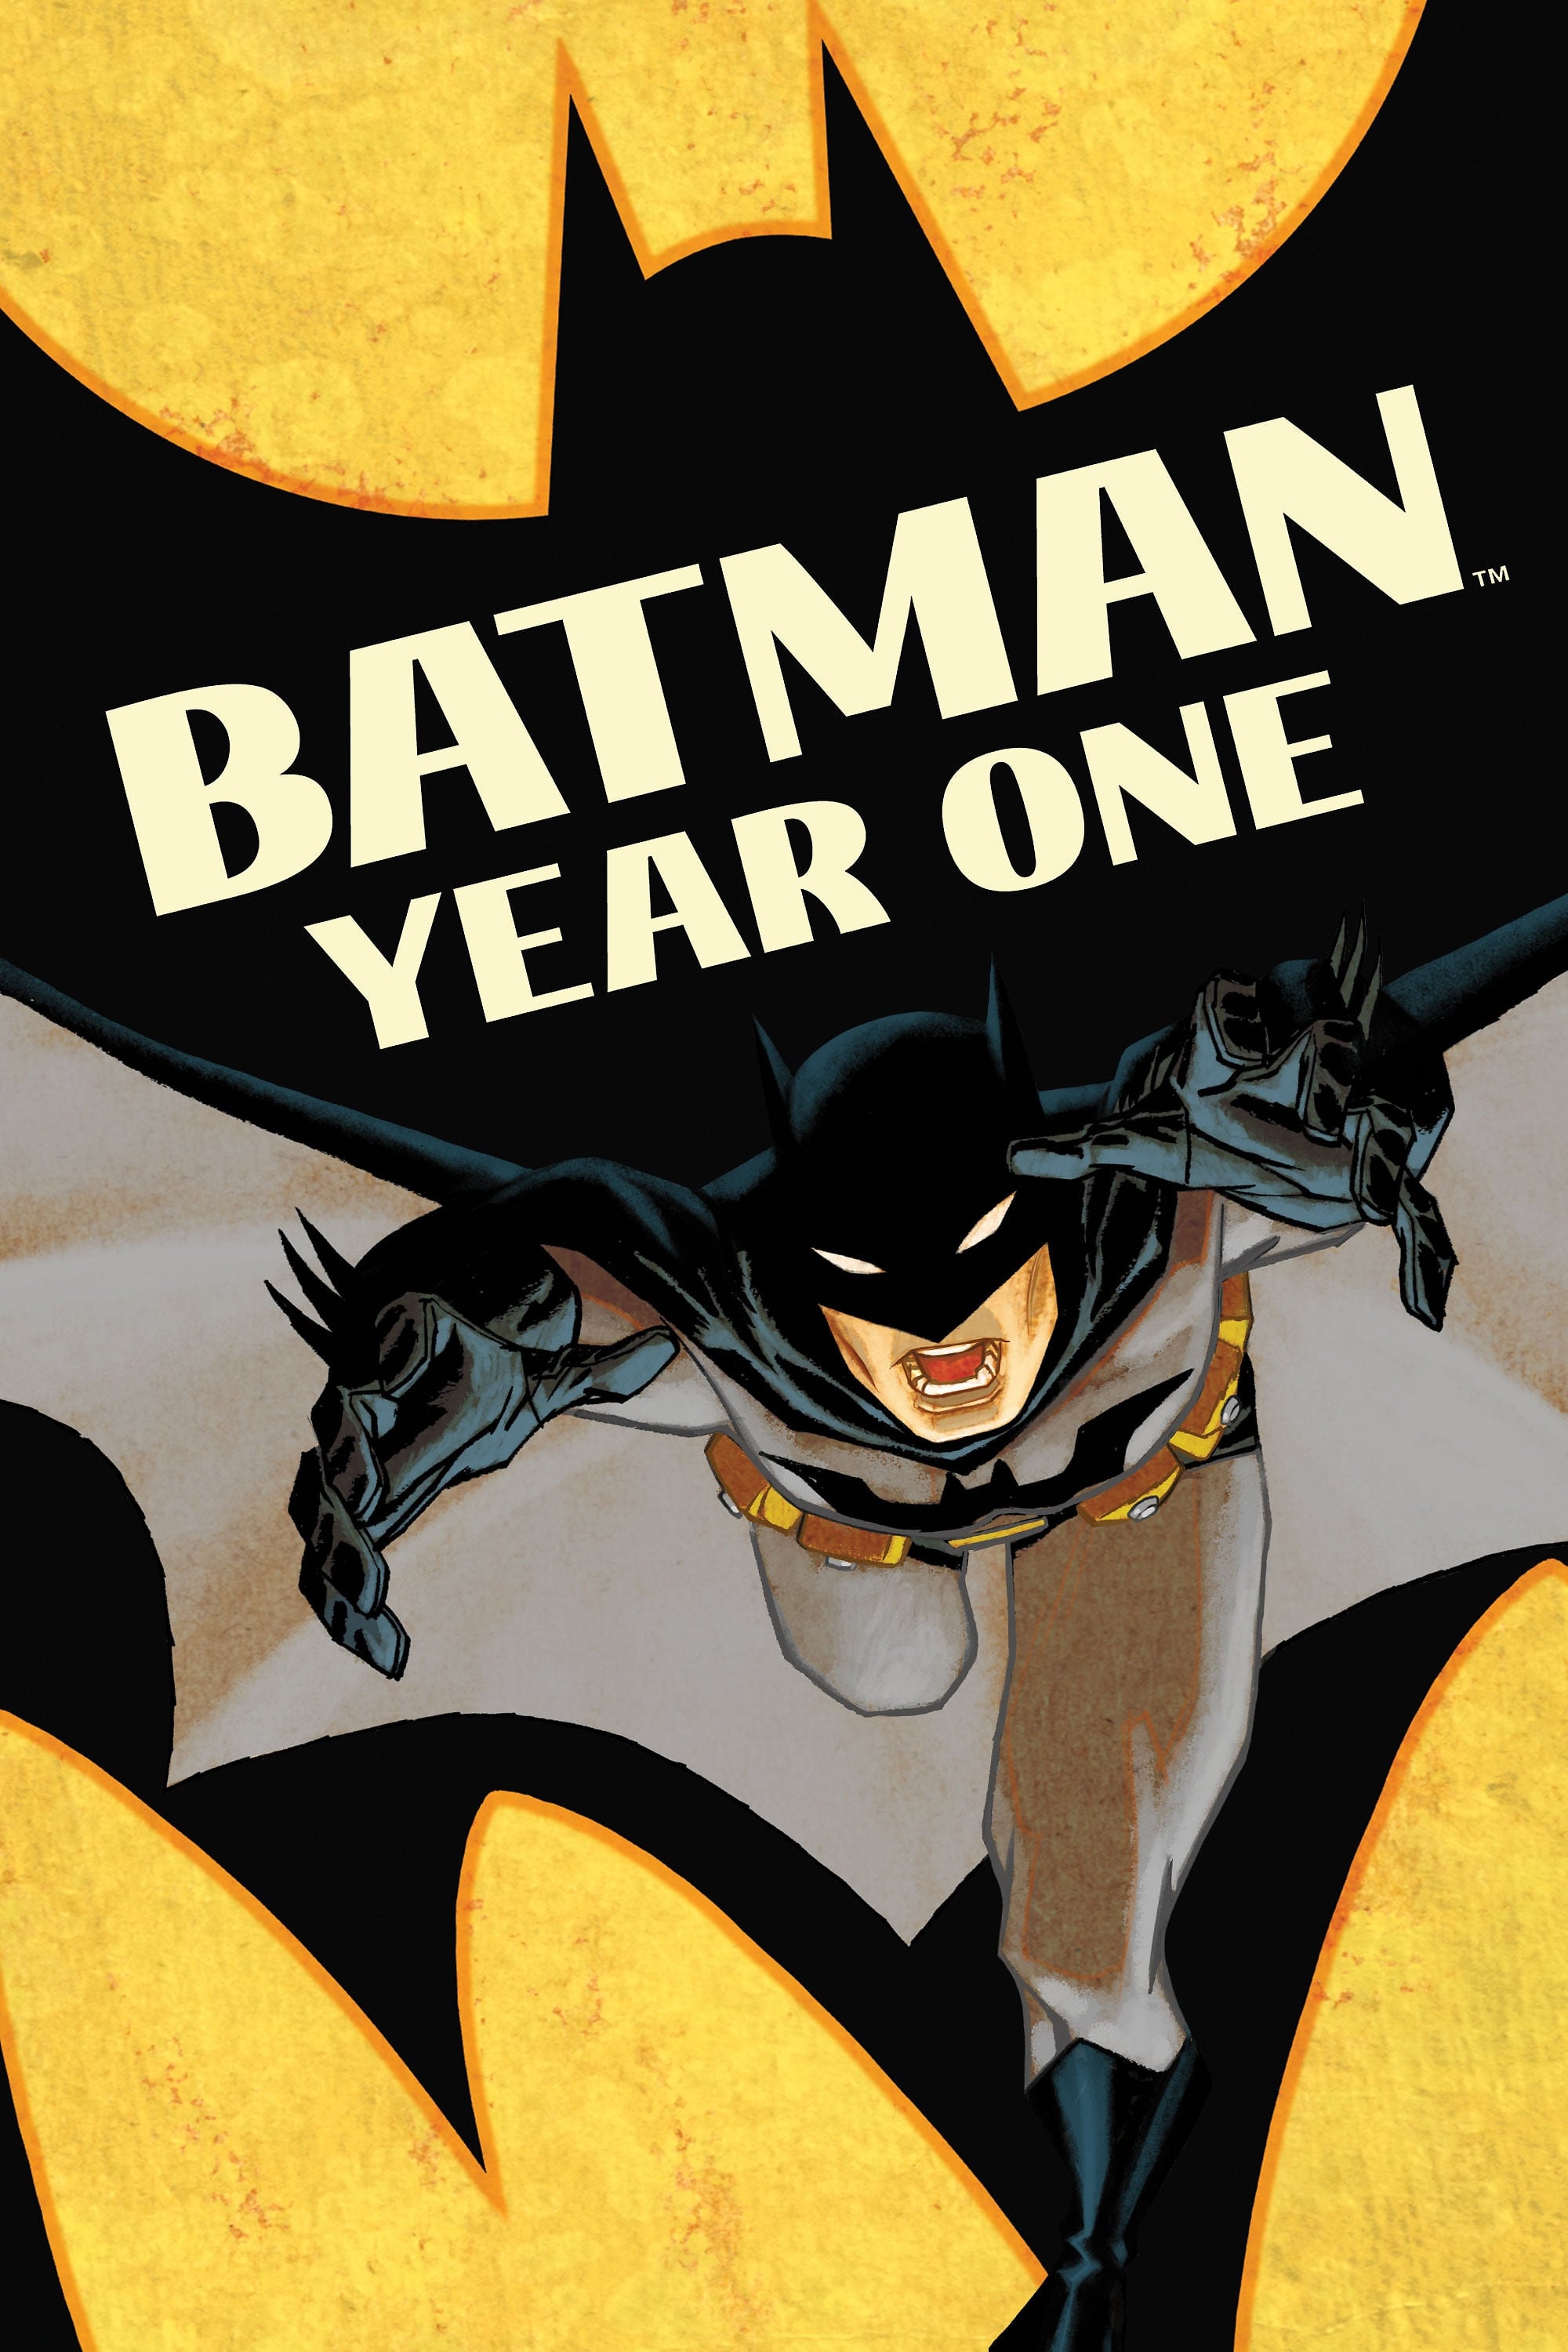 Người Dơi: Năm Đầu Tiên - Batman: Year One (2011)